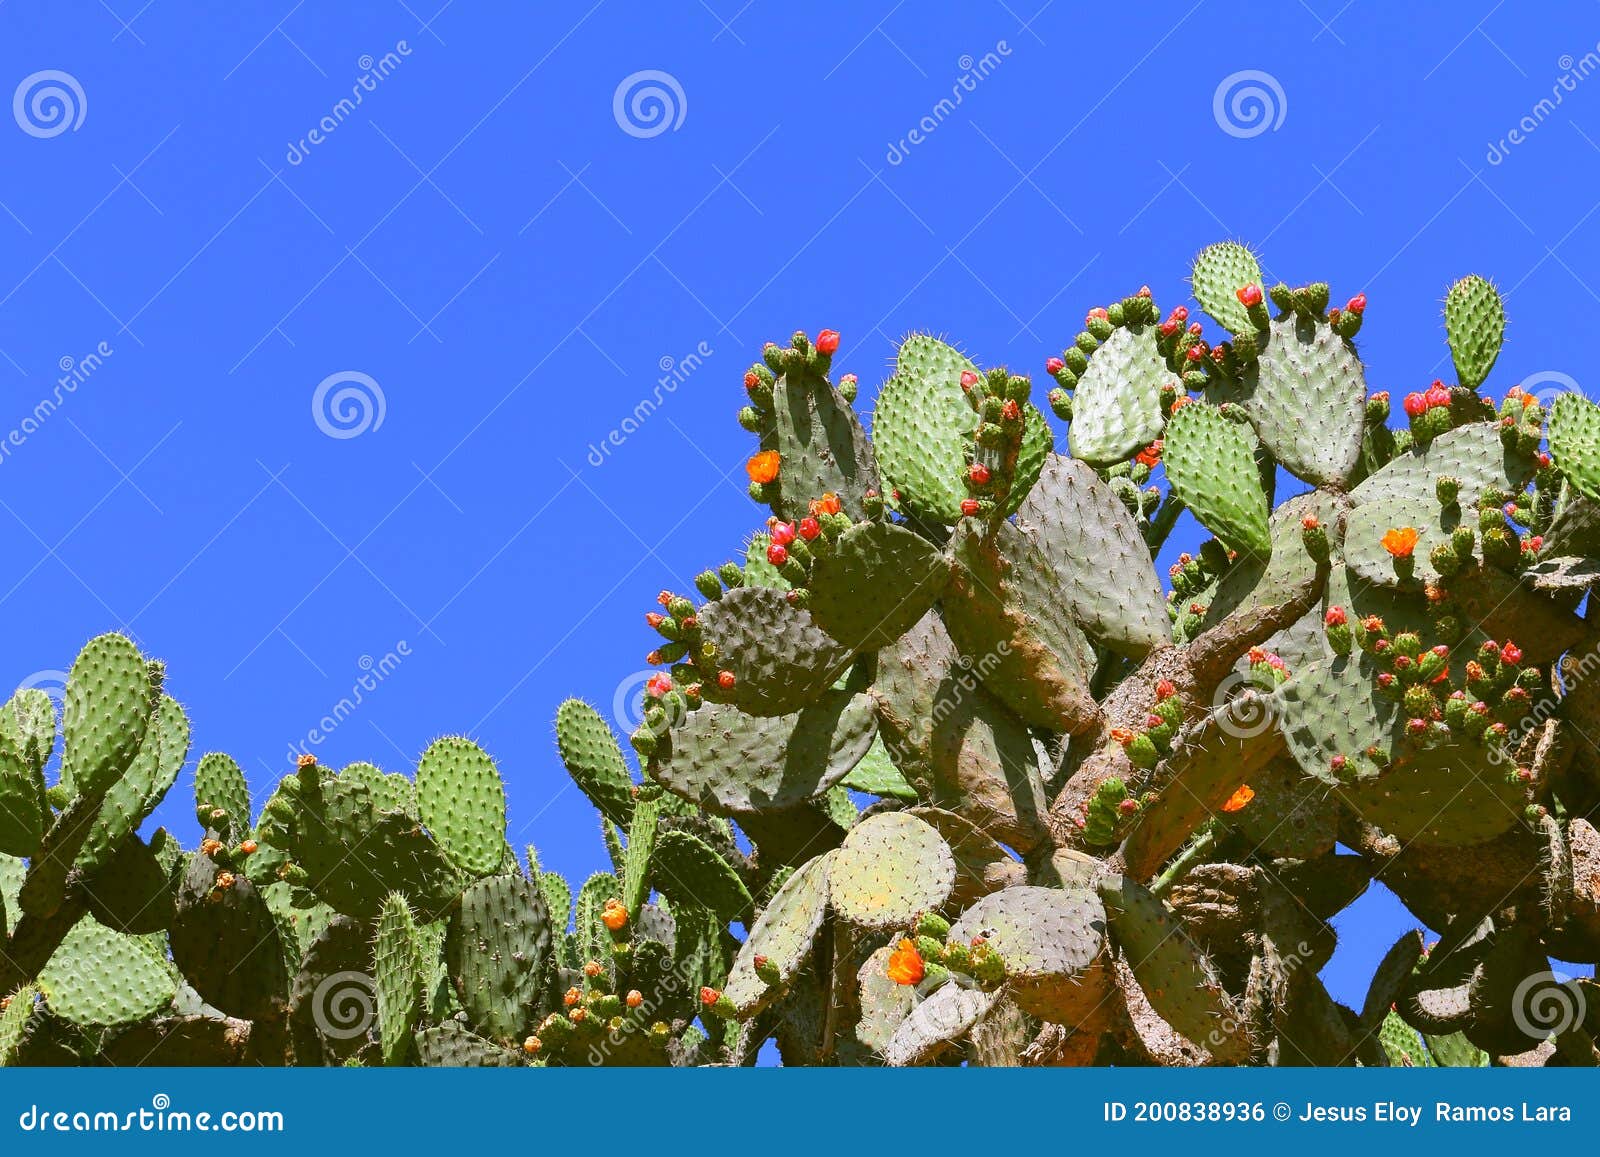 nopales   opuntia cacti  in mineral de pozos guanajuato, mexico ii